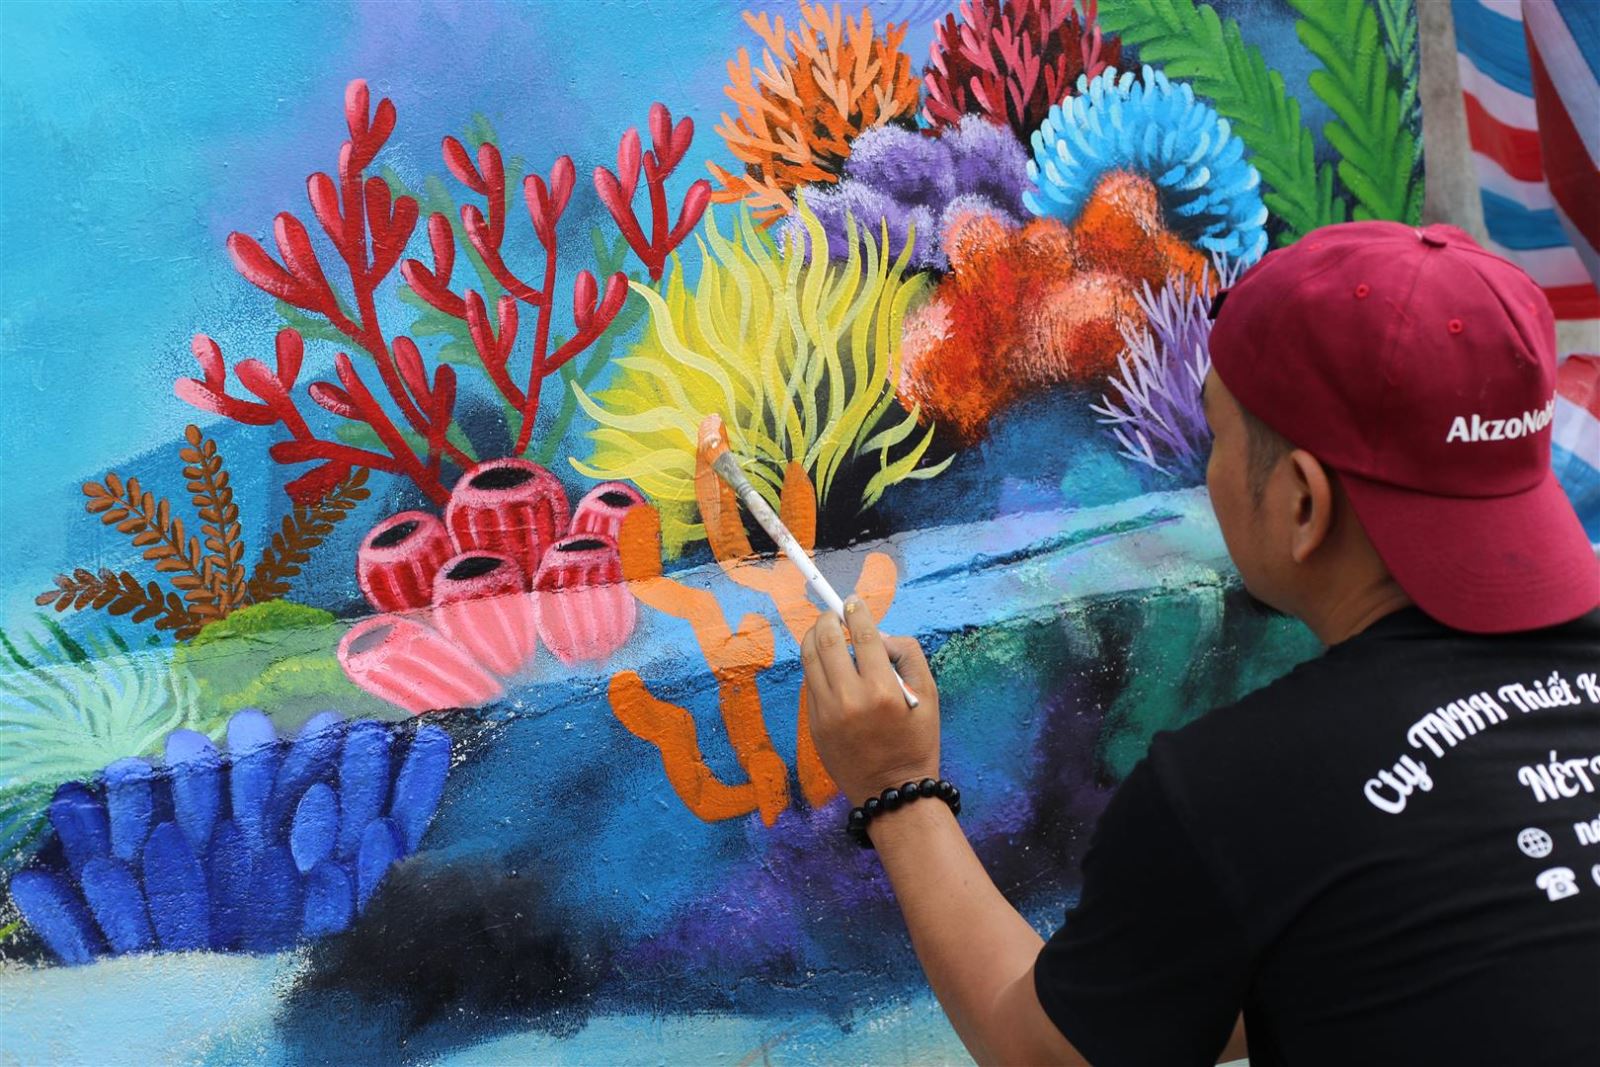 Vẽ rạn san hô là một nghệ thuật cần sự tinh tế và kỹ năng, và bức tranh này thực sự chứng tỏ được điều đó. Với màu sắc tươi sáng và họa tiết chân thực, bạn sẽ cảm thấy như đang chìm đắm trong vẻ đẹp của đại dương.